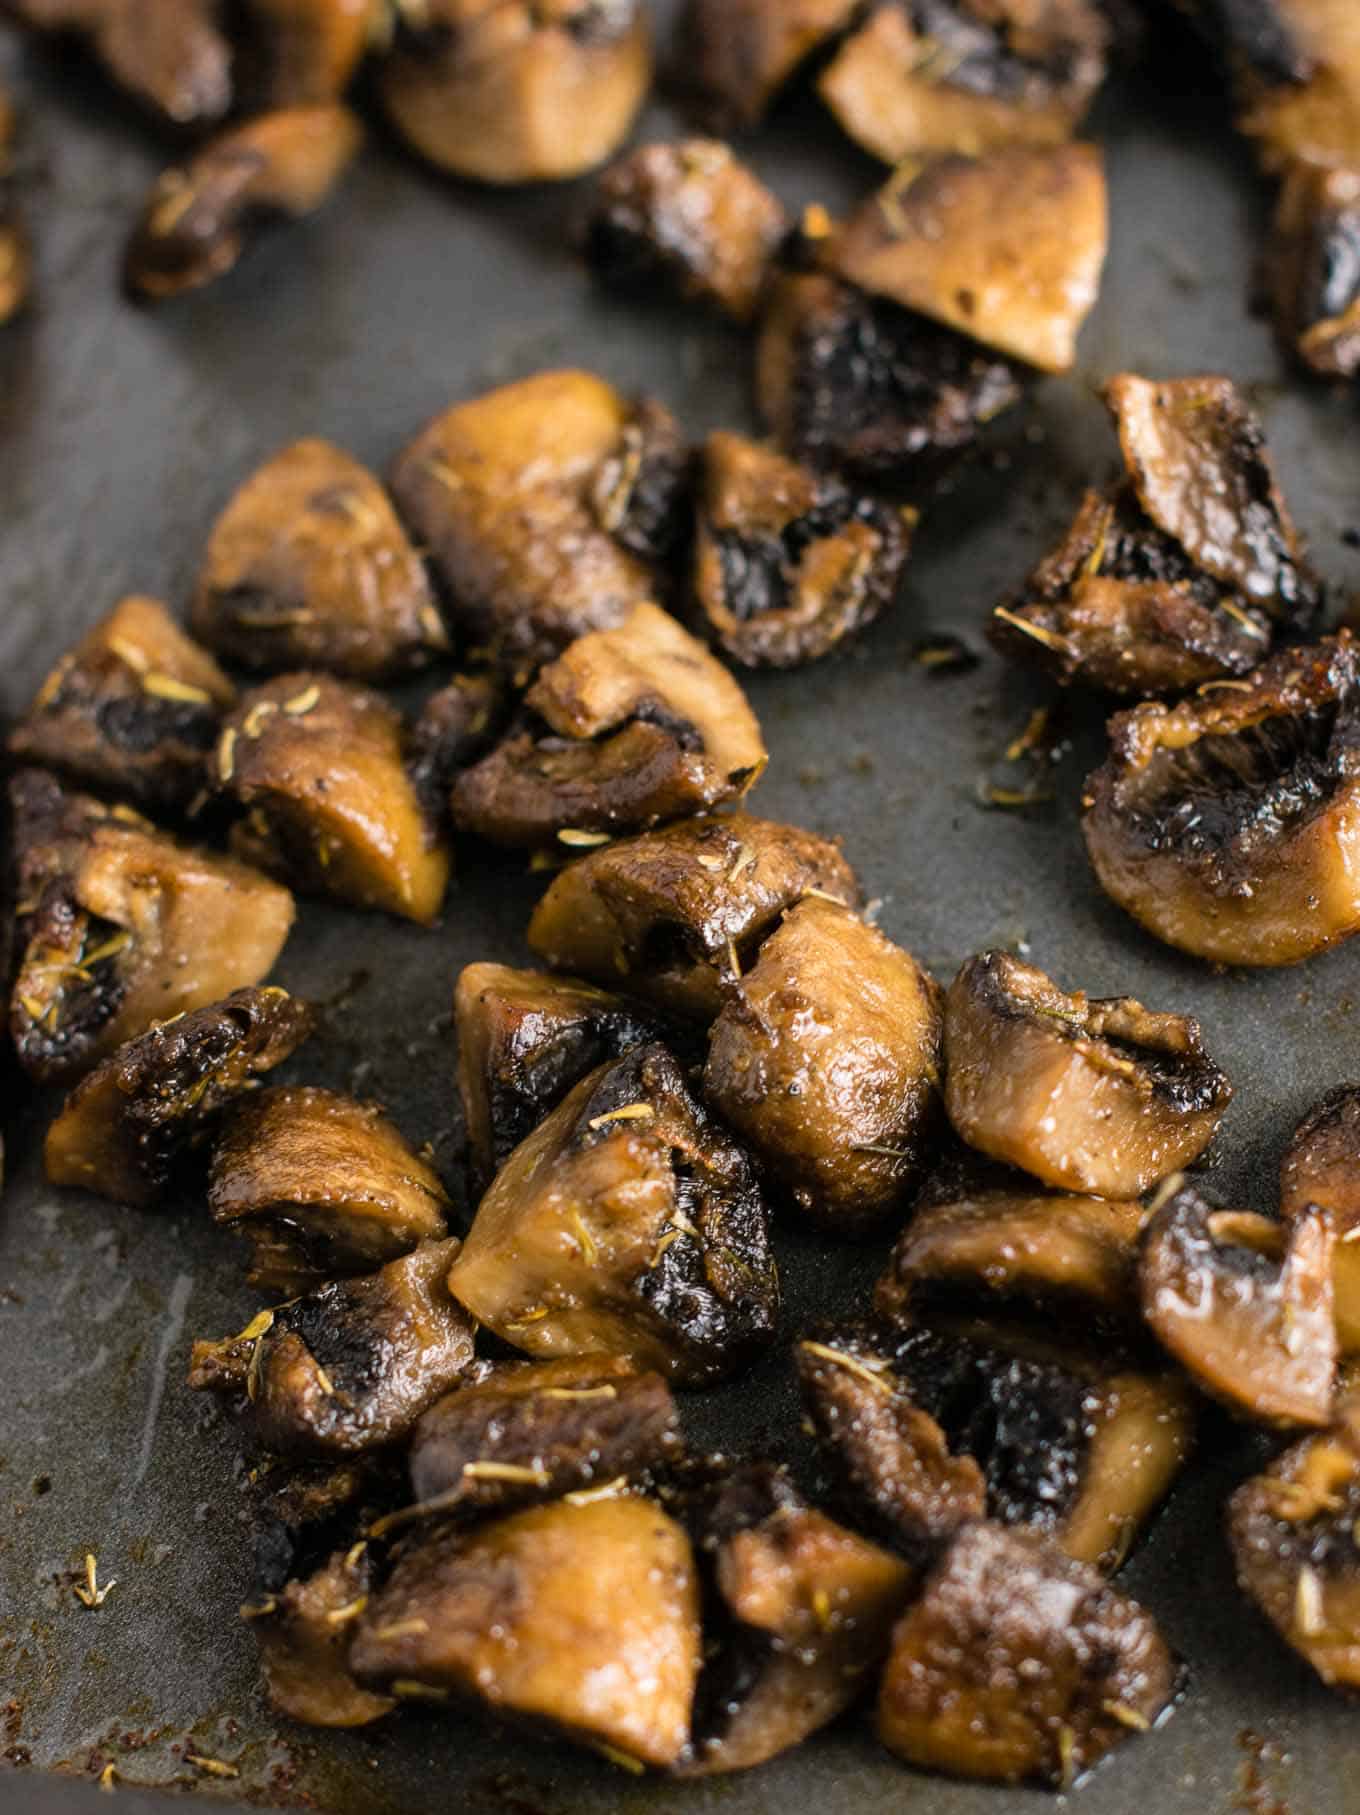 Quick and easy roasted mushrooms recipe. Perfect healthy side dish! #sidedish #roastedmushrooms #vegan #meatless #mushrooms #dinner #vegetables 